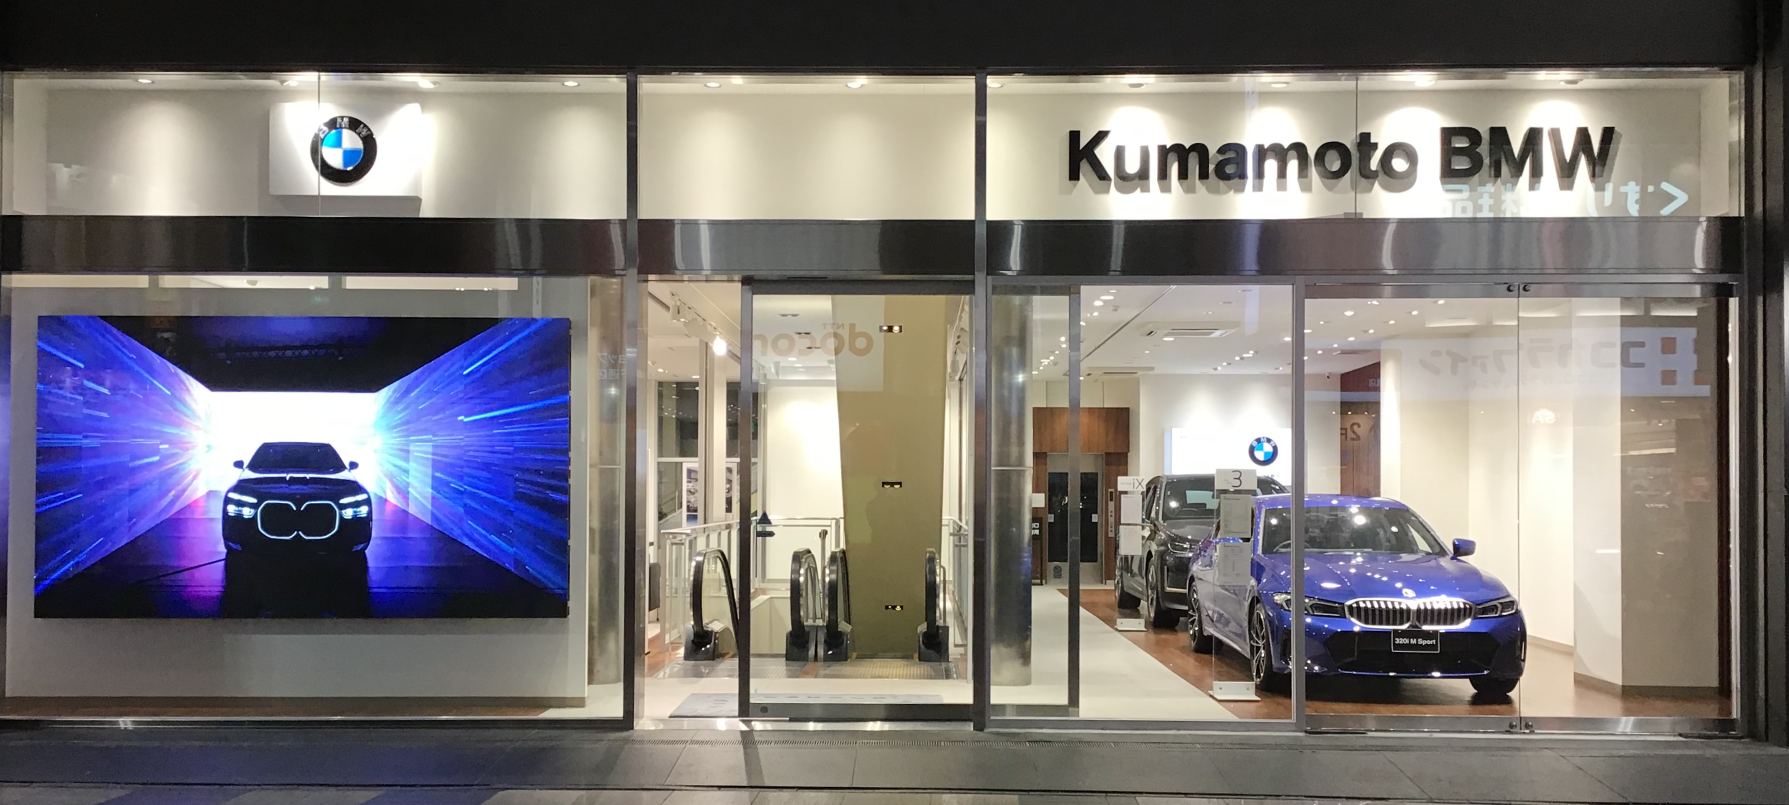 Welcome to Kumamoto BMW